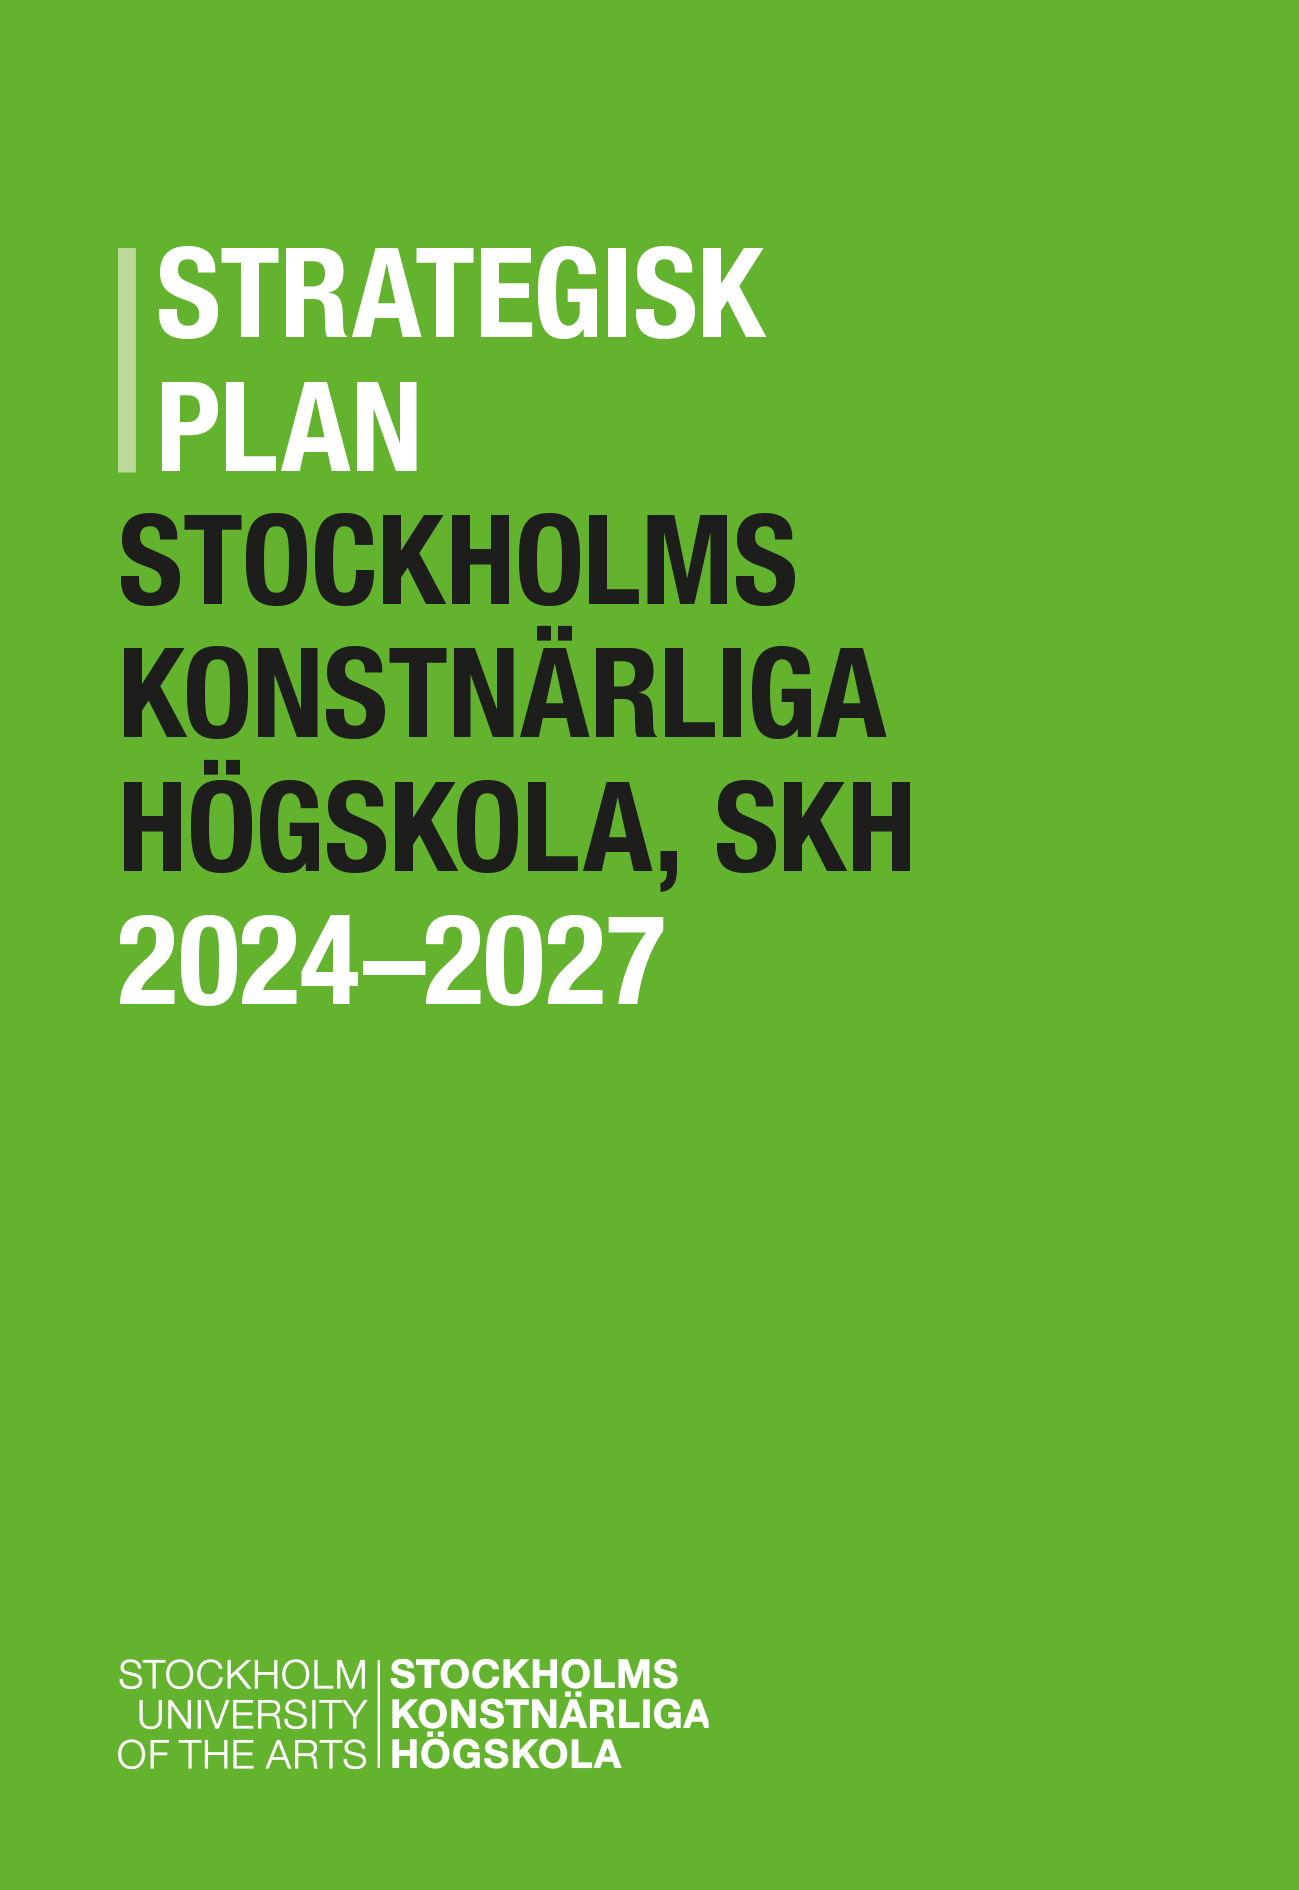 Strategisk plan SKH 2024-2027-1.png